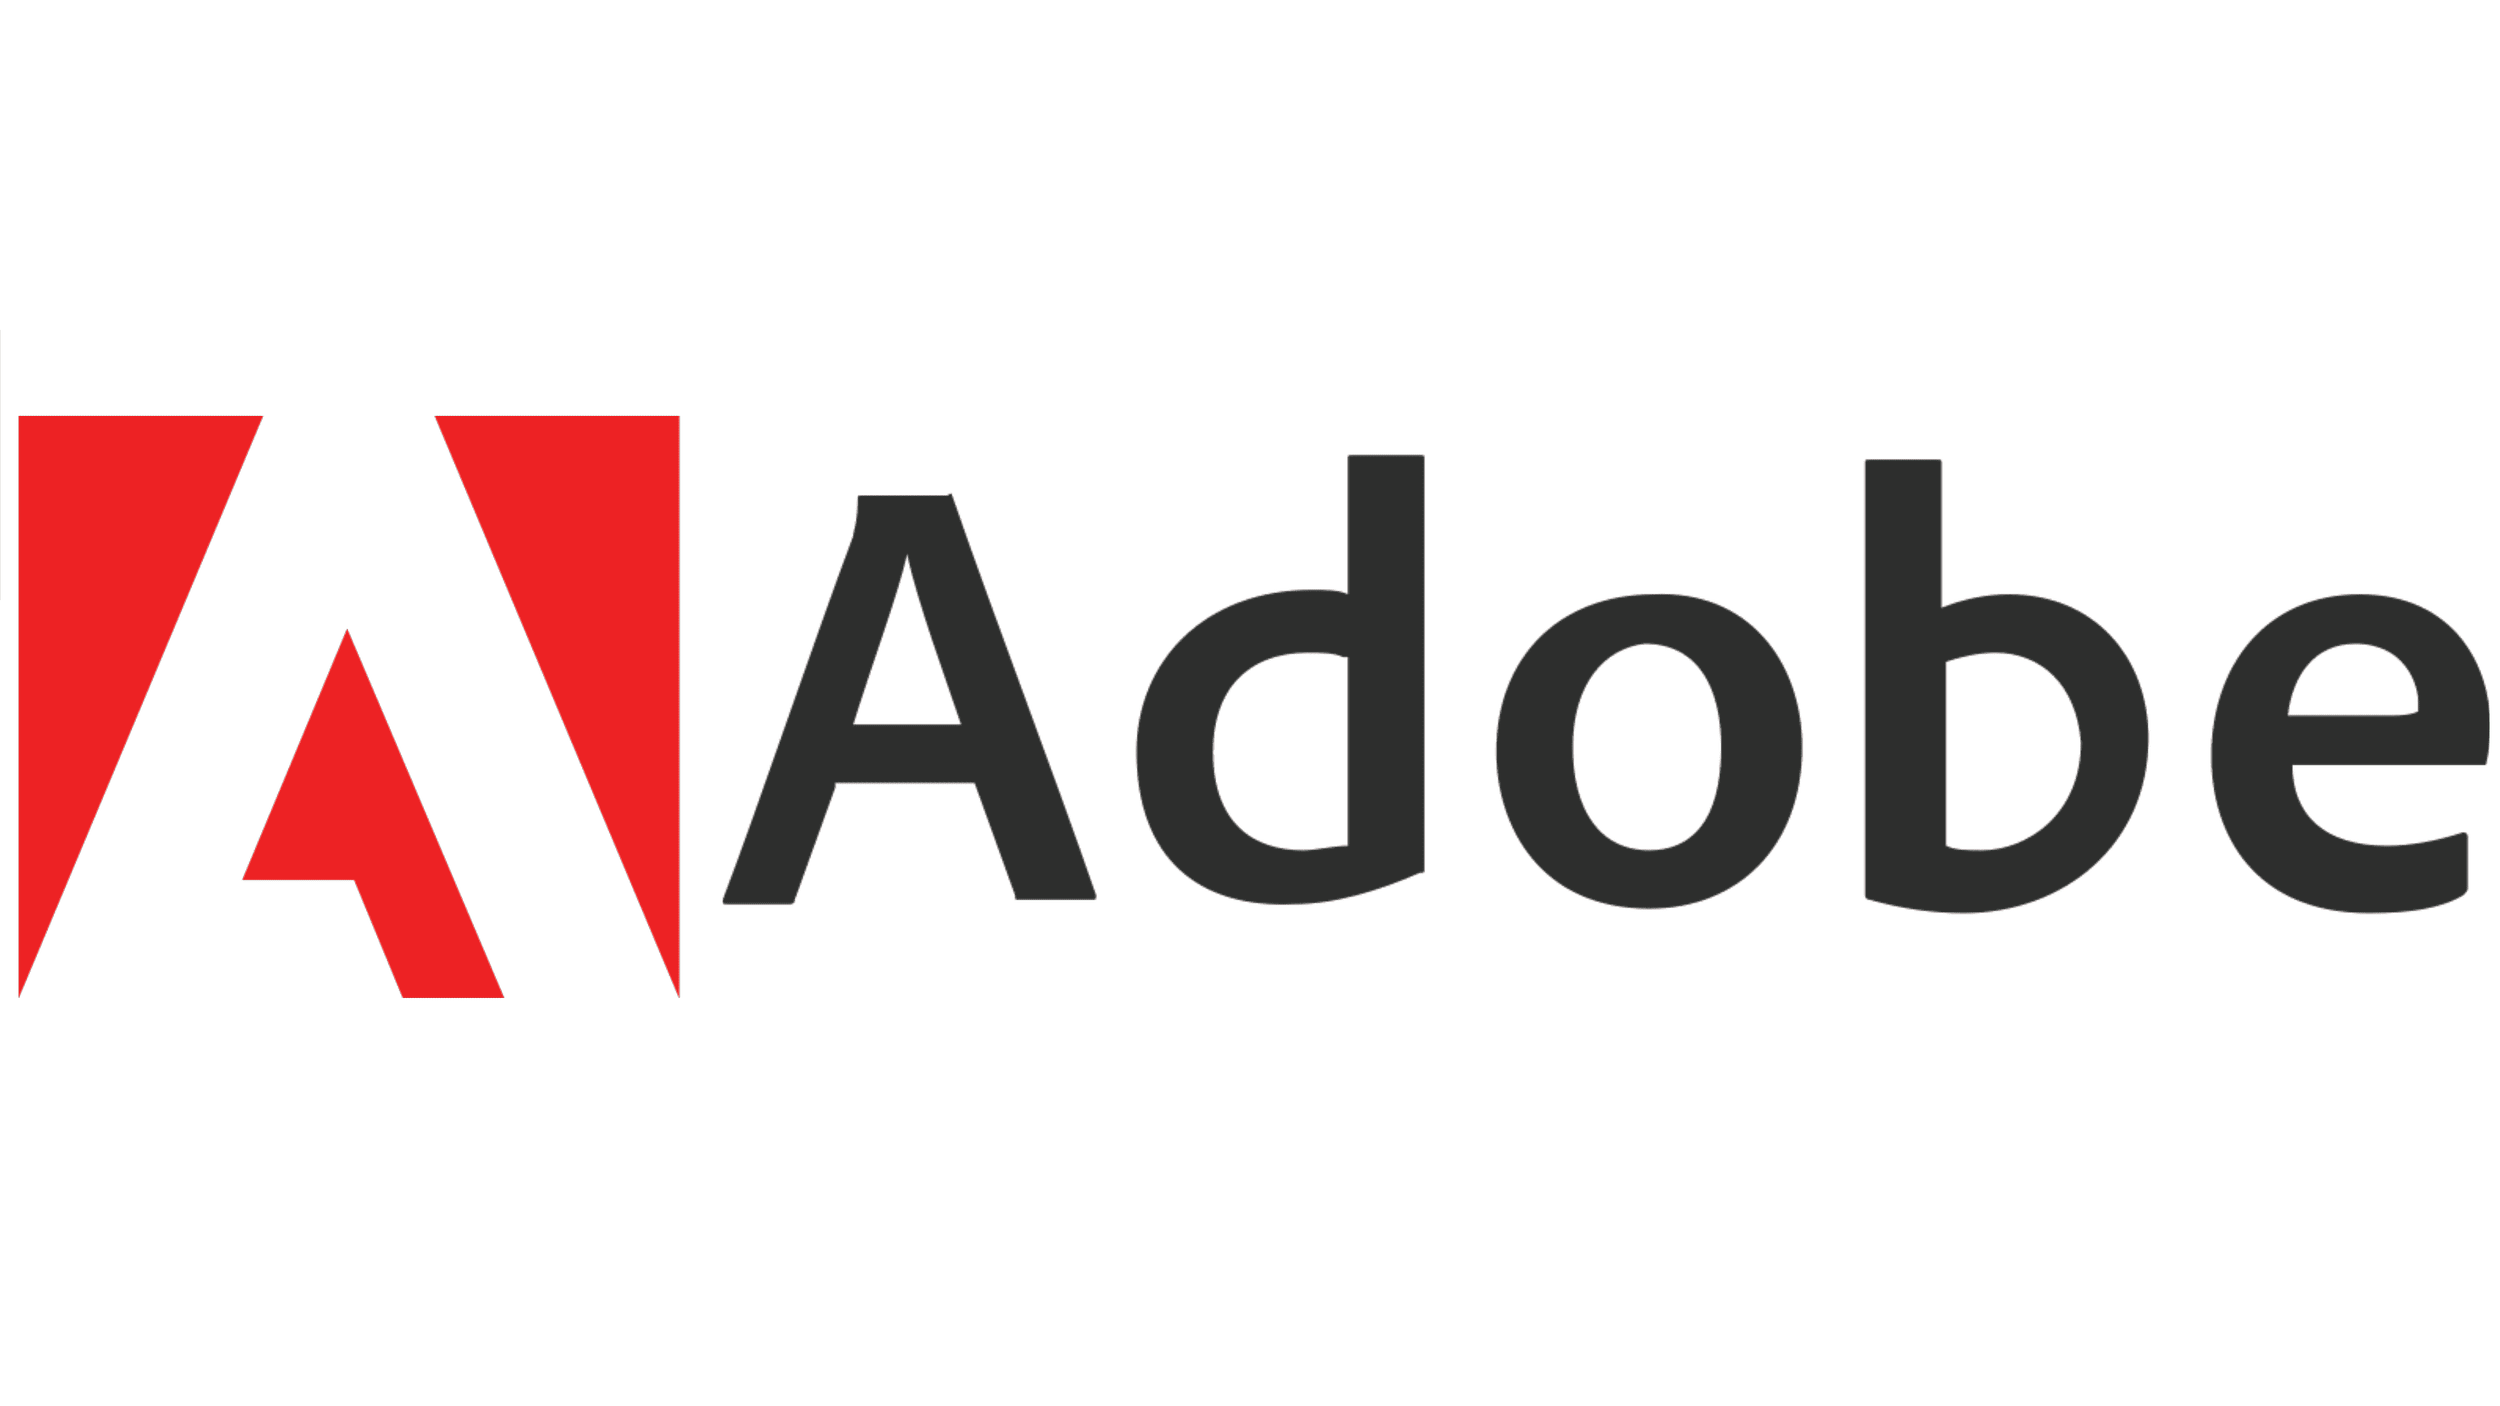 Adobe-Logo.png